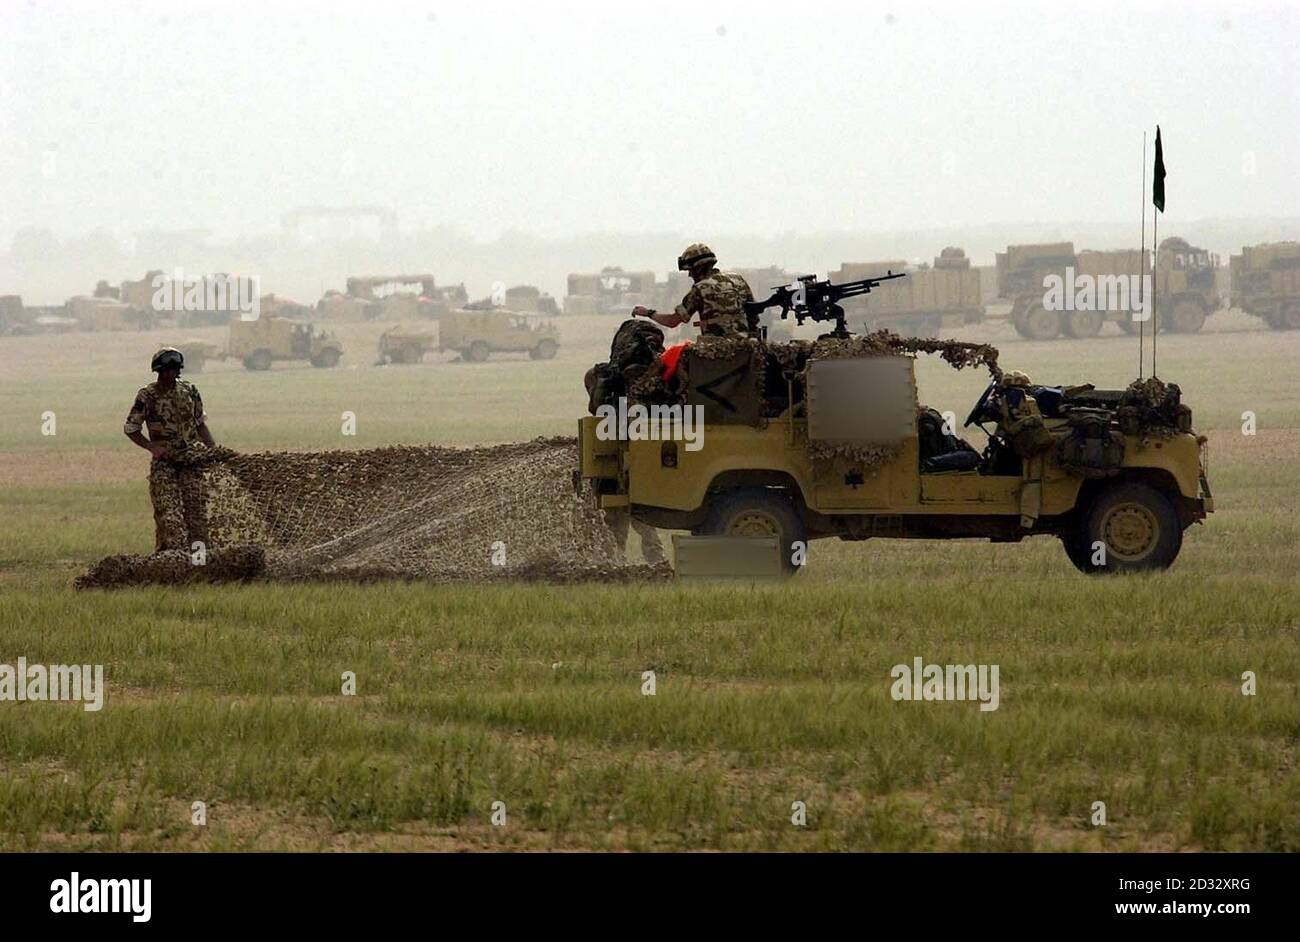 Britische Truppen der 16 Air Assault Brigade bereiten ihre Fahrzeuge und Ausrüstung vor, während sie sich nahe der irakischen Grenze versammeln. Stockfoto